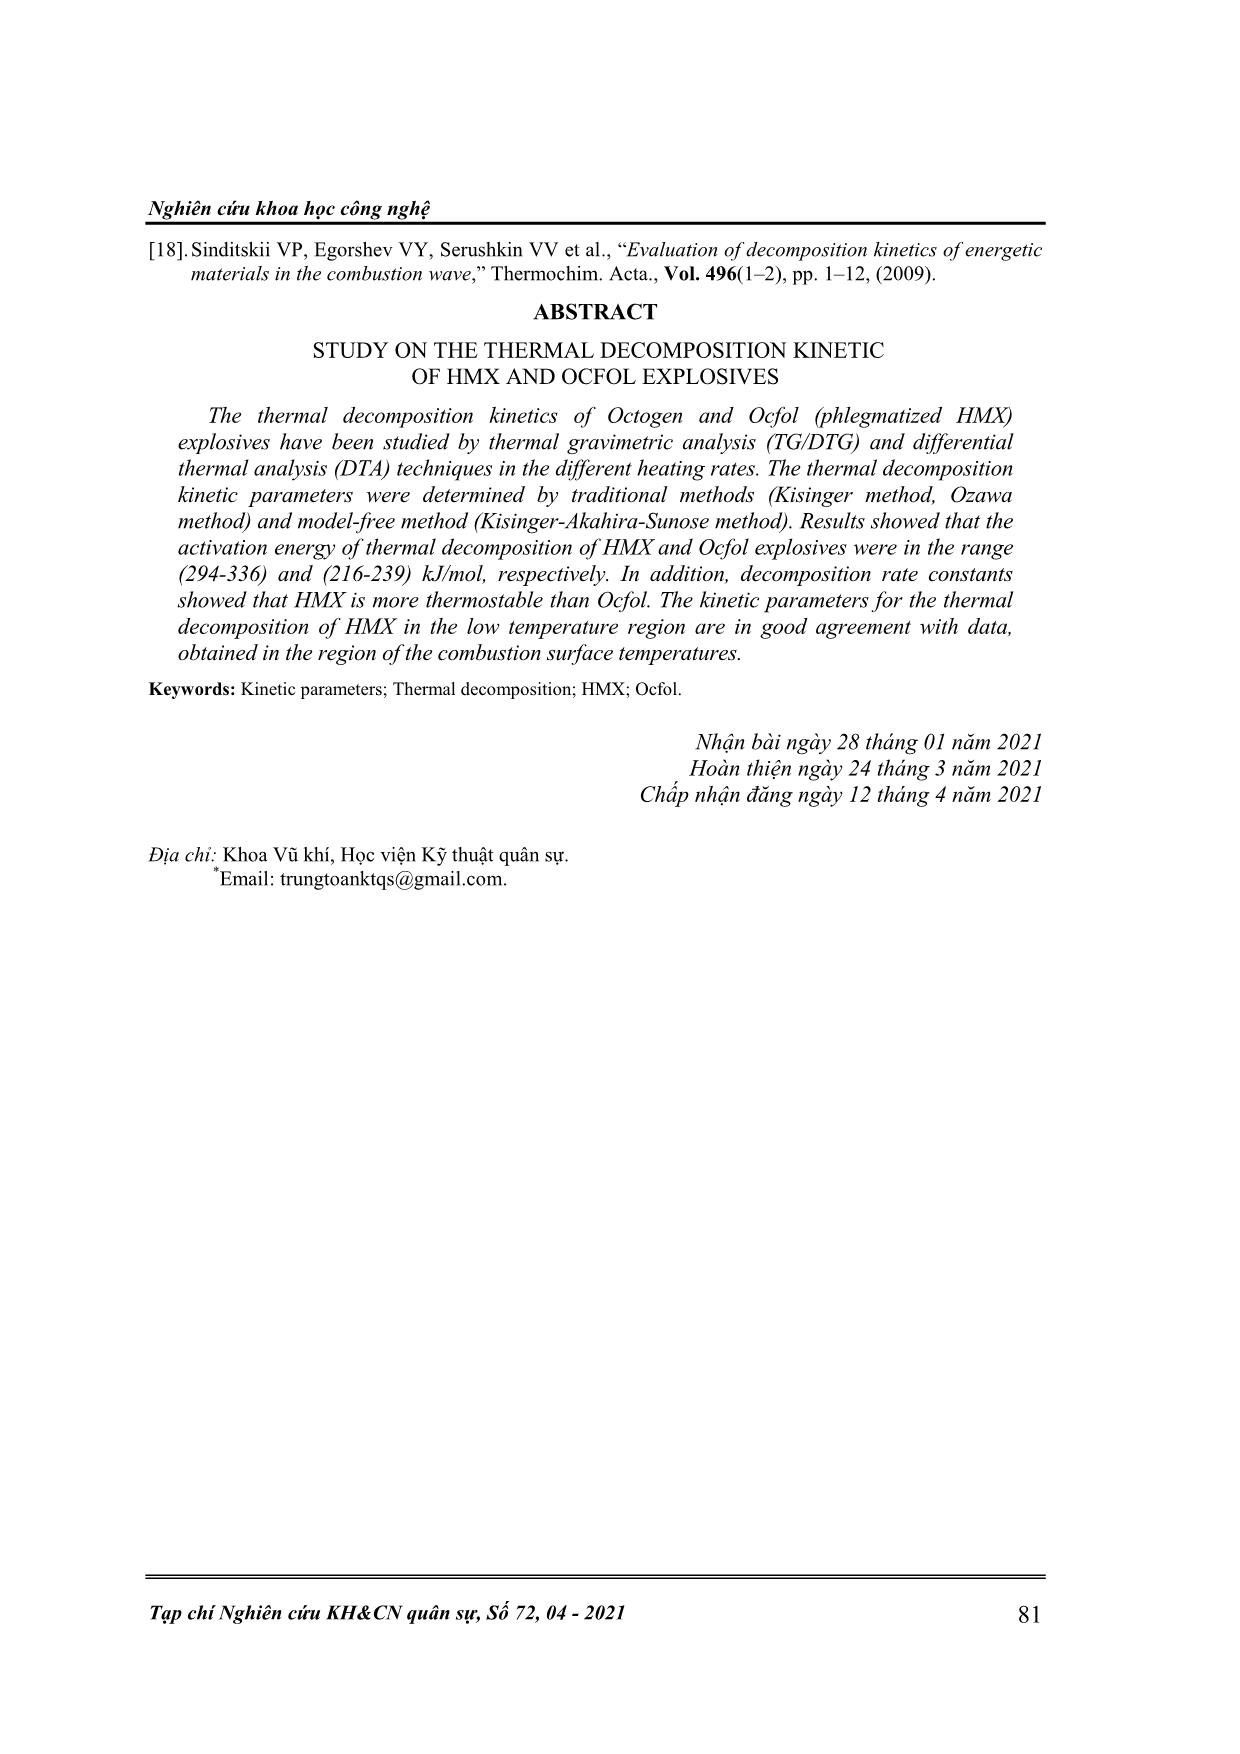 Nghiên cứu động học quá trình phân hủy nhiệt của thuốc nổ HMX và Ocfol trang 9